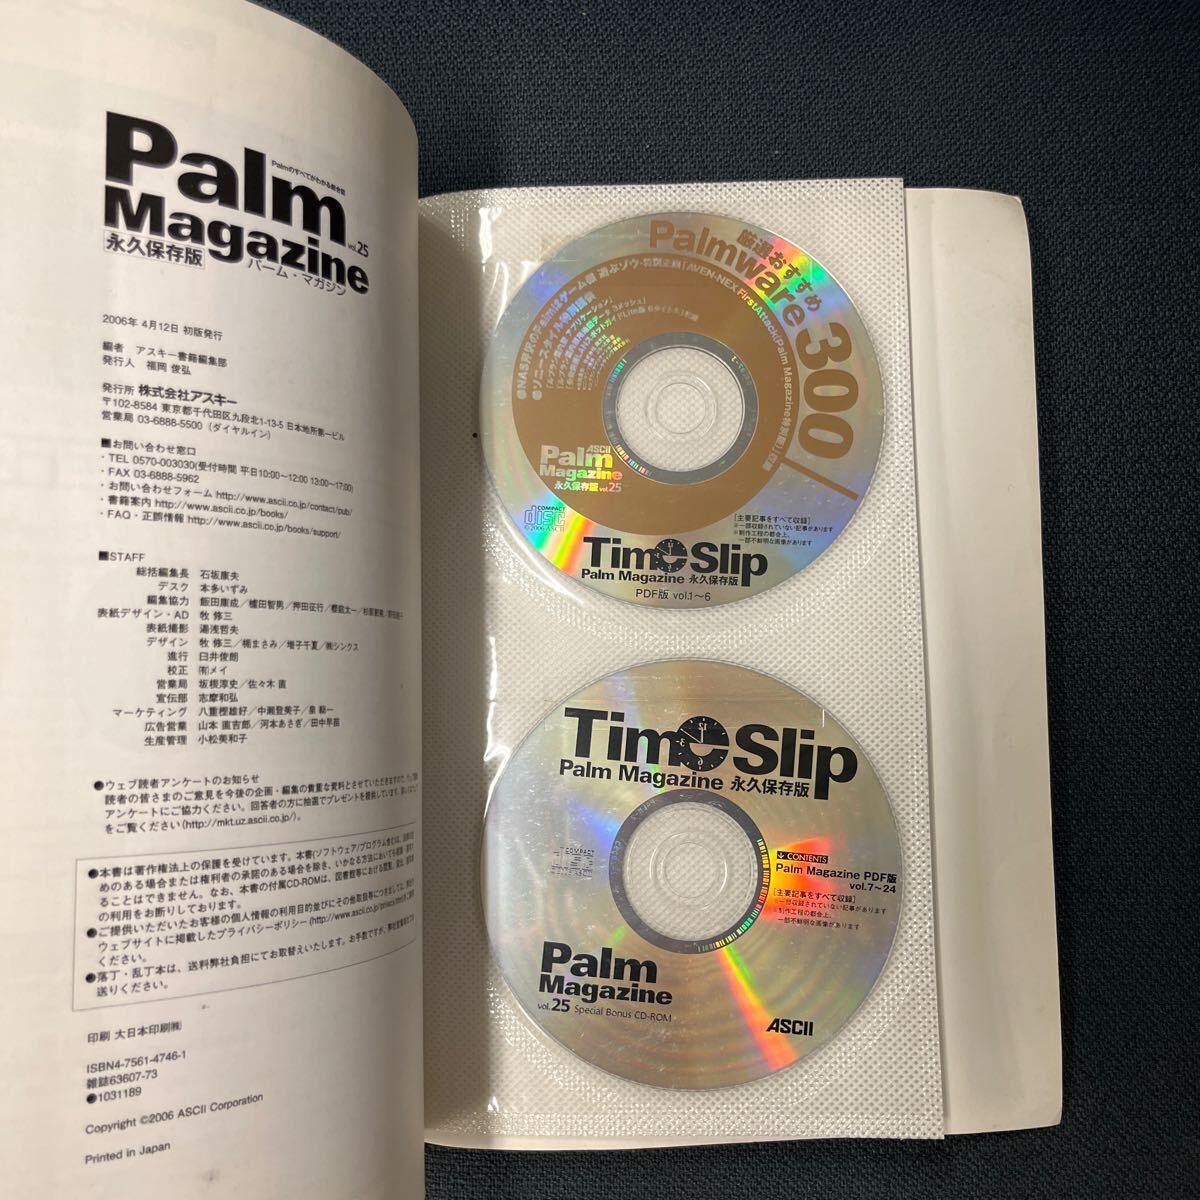 カラー版 & 日本語版対応 Palm対応 Palm Book CD-ROM付 & Palm Magazine Vol.26 永久保存版の画像8